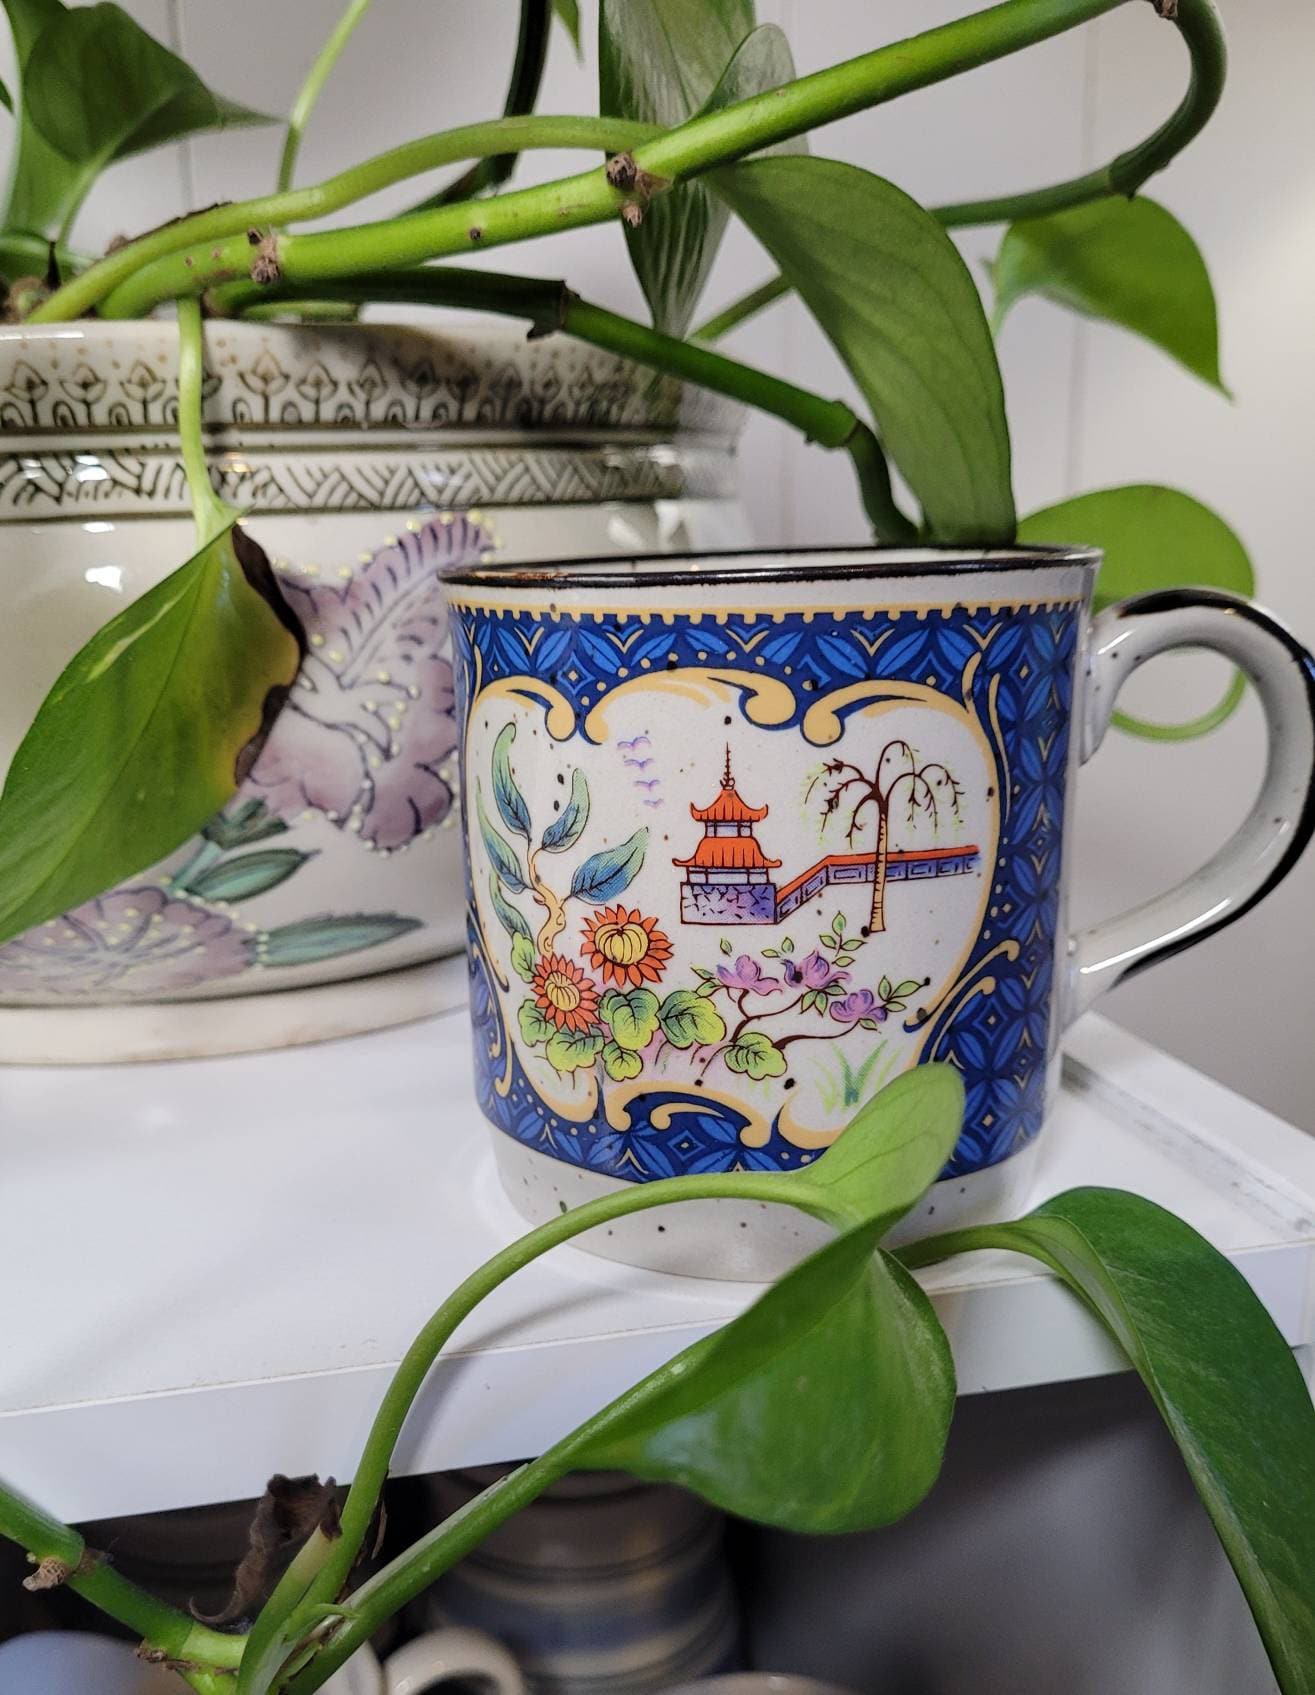 Asian Gifts for Women, Asian Gifts, Asian Mom, Asian 11 oz Ceramic Coffee  Mug